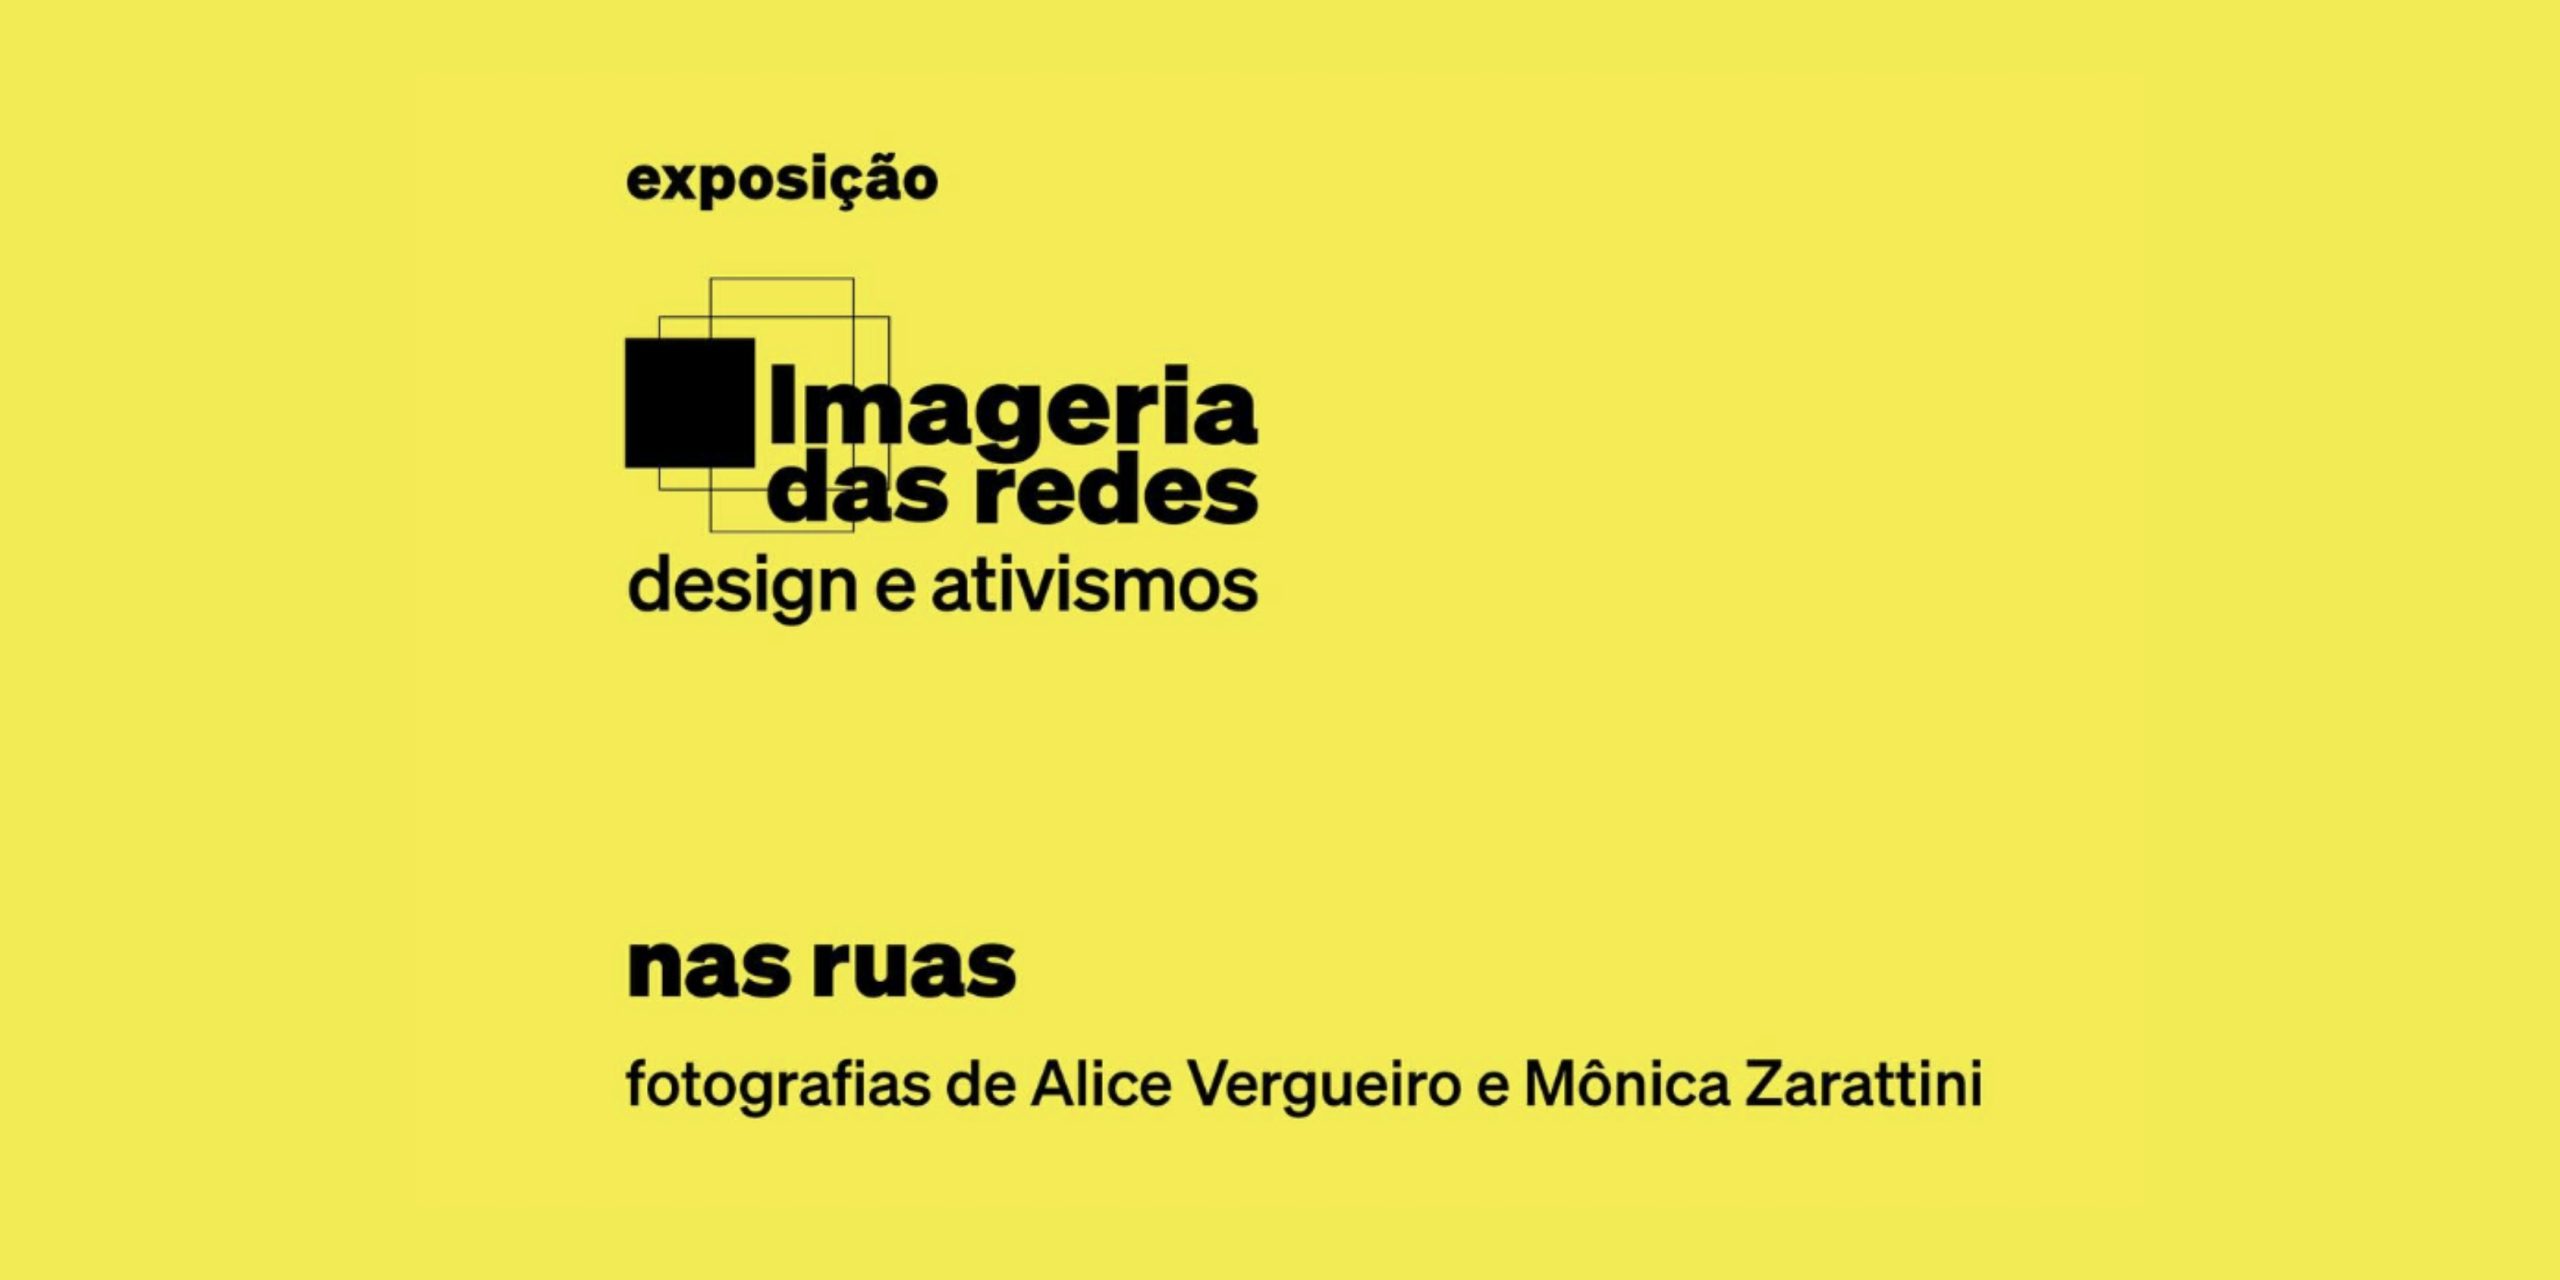 Exposição “Imageria das redes: design e ativismos” com fotografias das associadas Alice Vergueiro e Mônica Zarattini